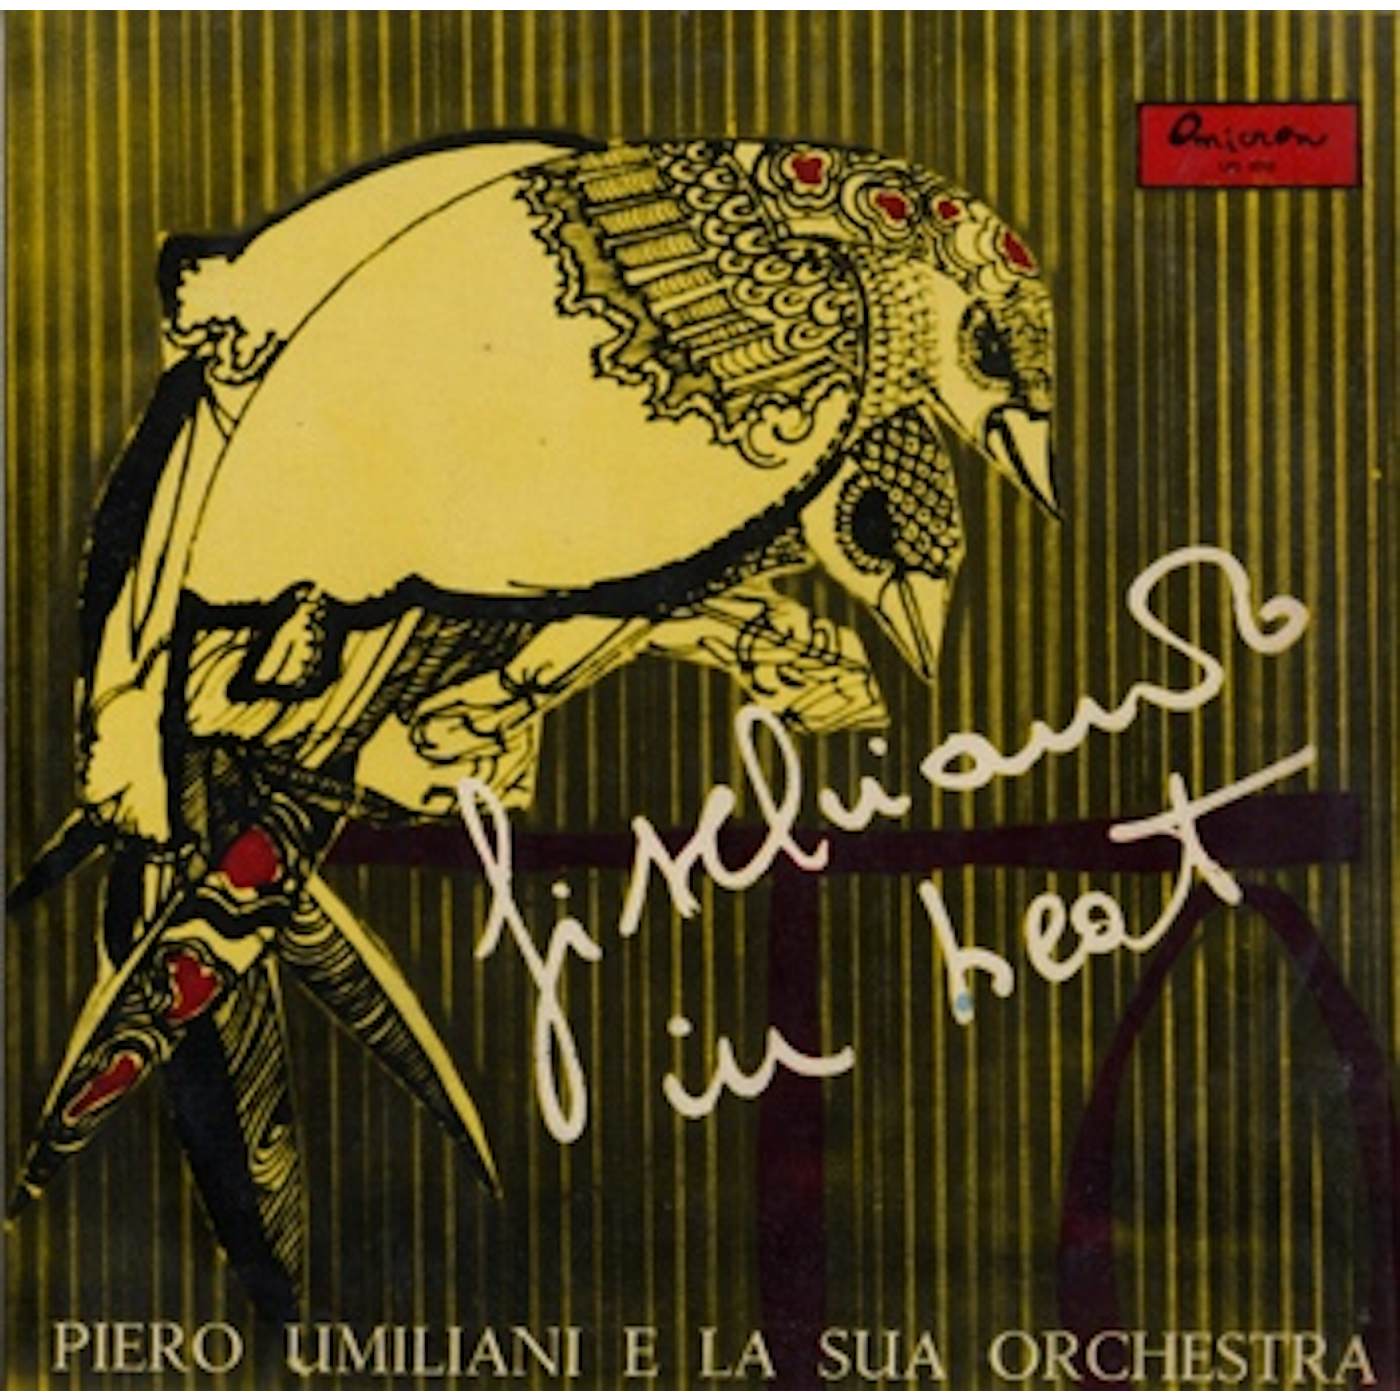 Piero Umiliani e la sua Orchestra FISCHIANDO IN BEAT Vinyl Record - Italy Release